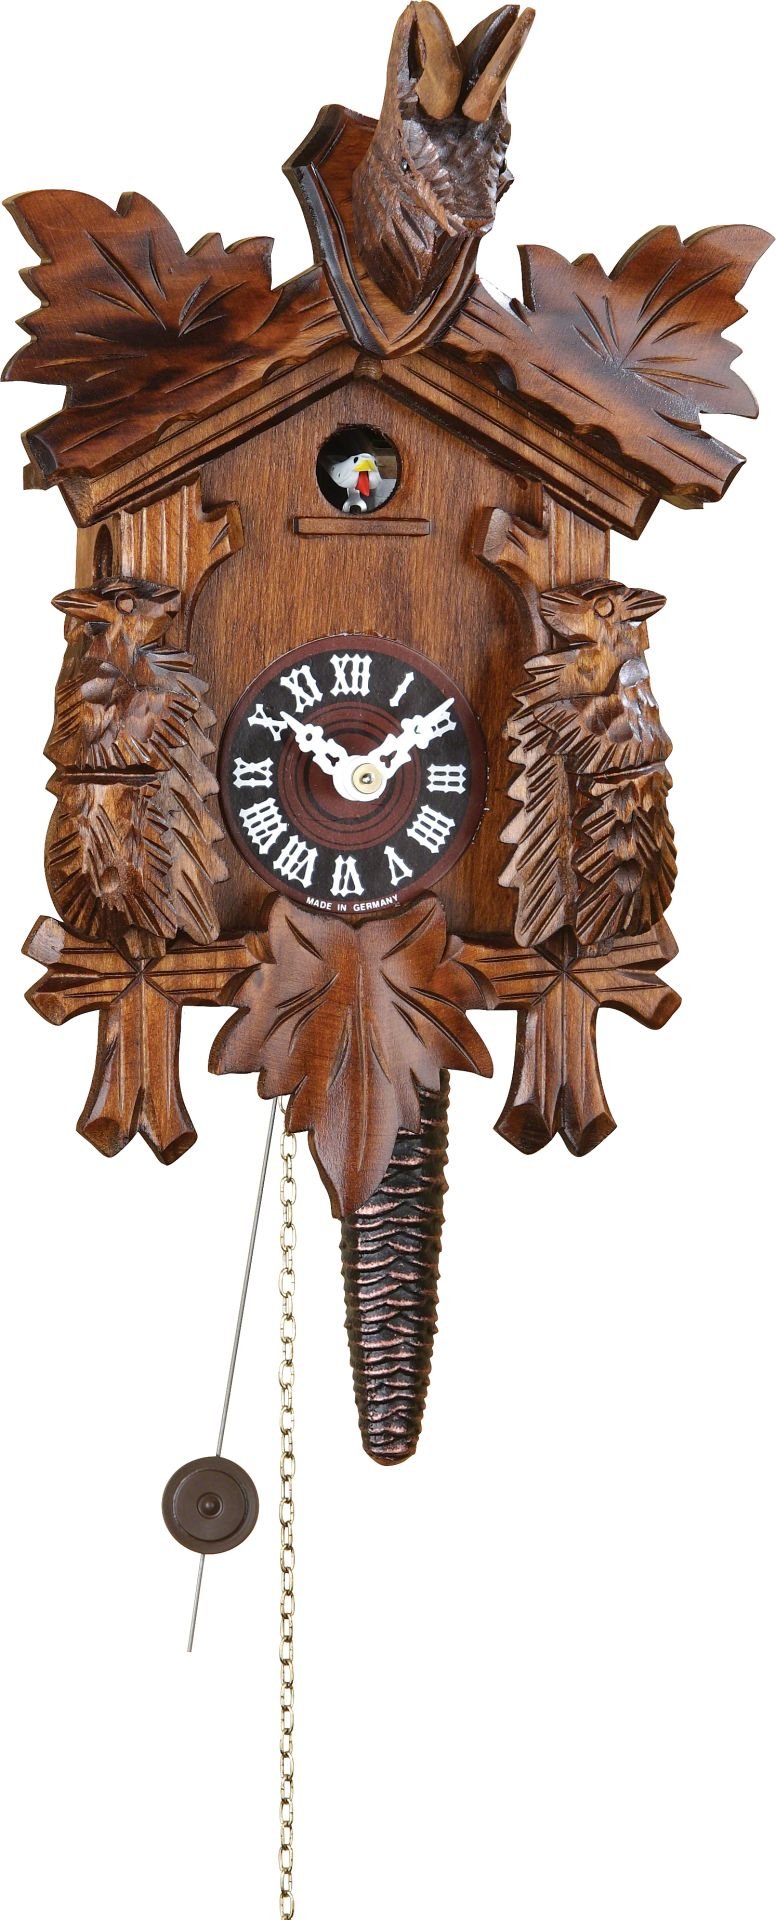 Reloj de cuco estilo “Madera tallada” movimiento del elevador de cadena 25cm de Trenkle Uhren